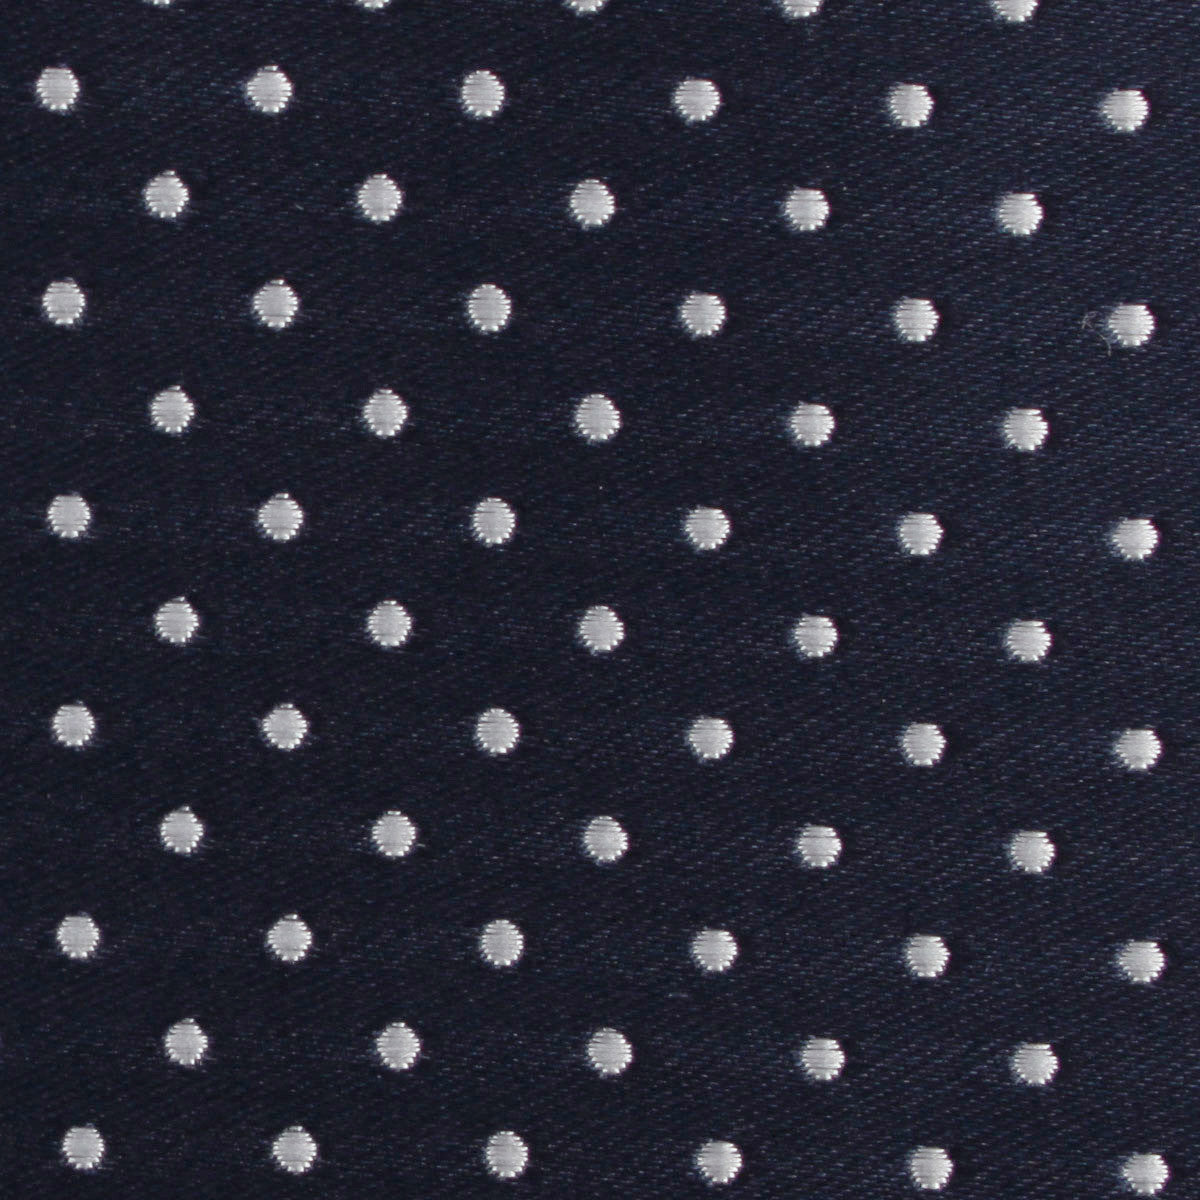 Midnight Blue Mini Pin Dots Fabric Skinny Tie